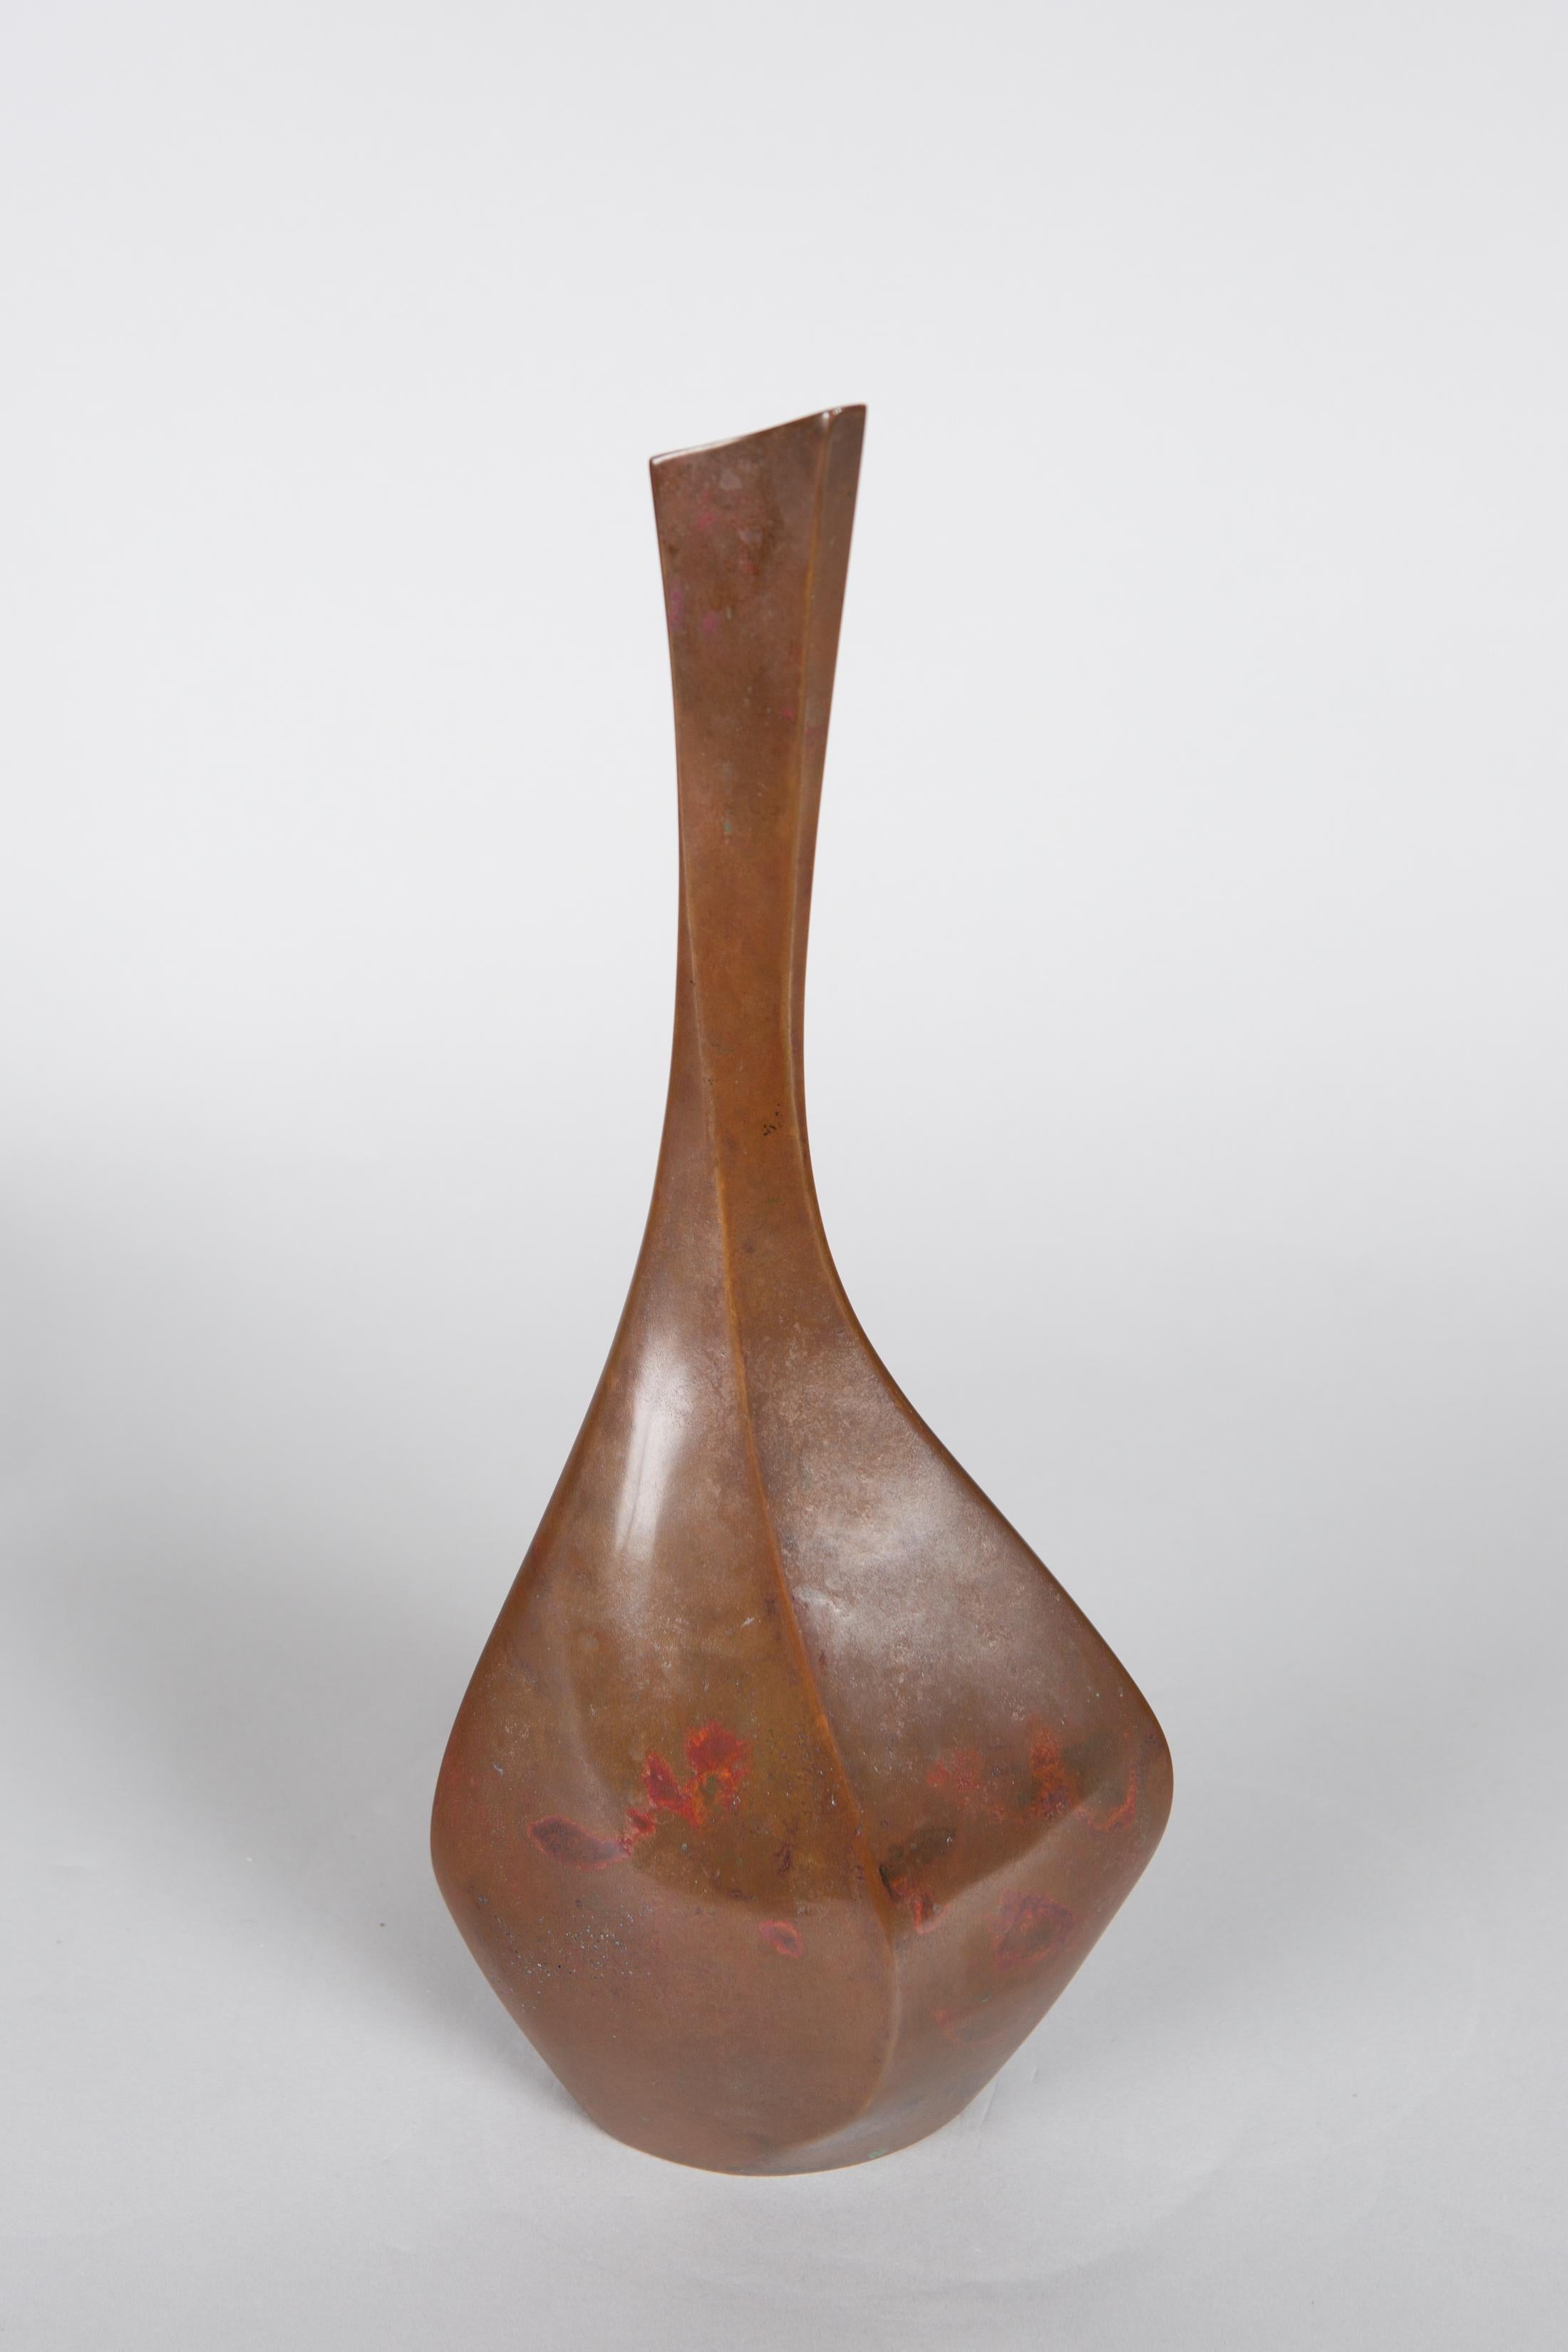 Showa period (1930), modern Japanese bronze bud vase. Graceful, faceted bud vase. Signature reads: Kobayashi Masayoshi. Comes with original wood (kiri) storage box.